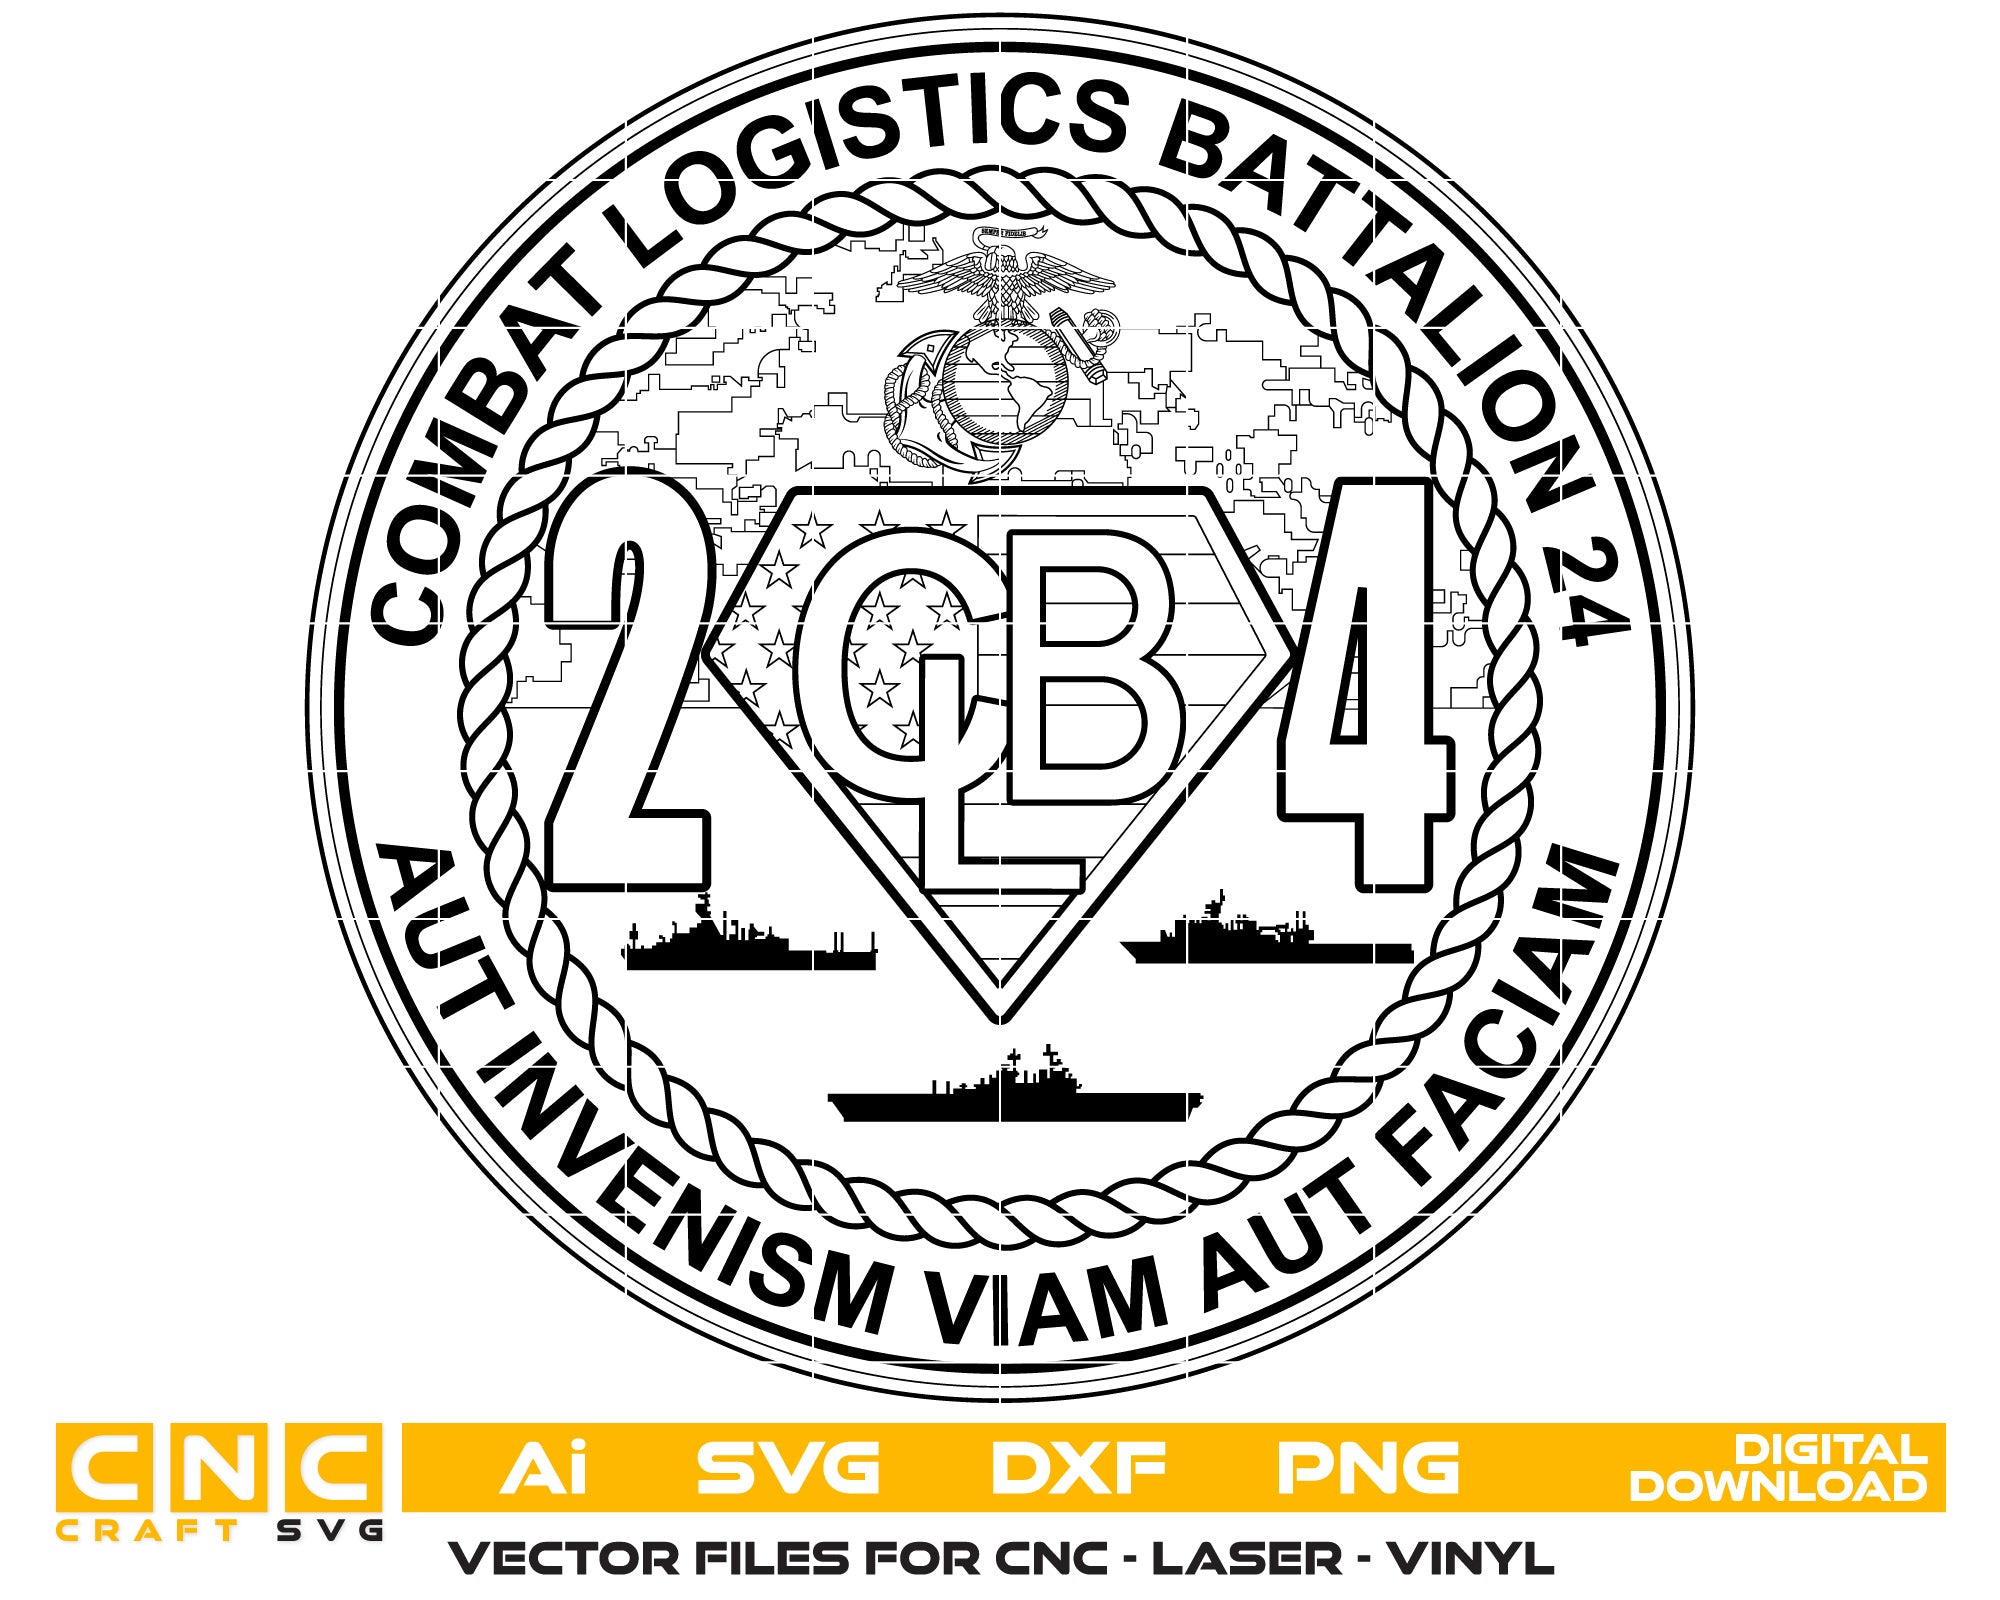 Combat Logistics Battalion 24 Vector Art, Ai,SVG, DXF, PNG, Digital Files